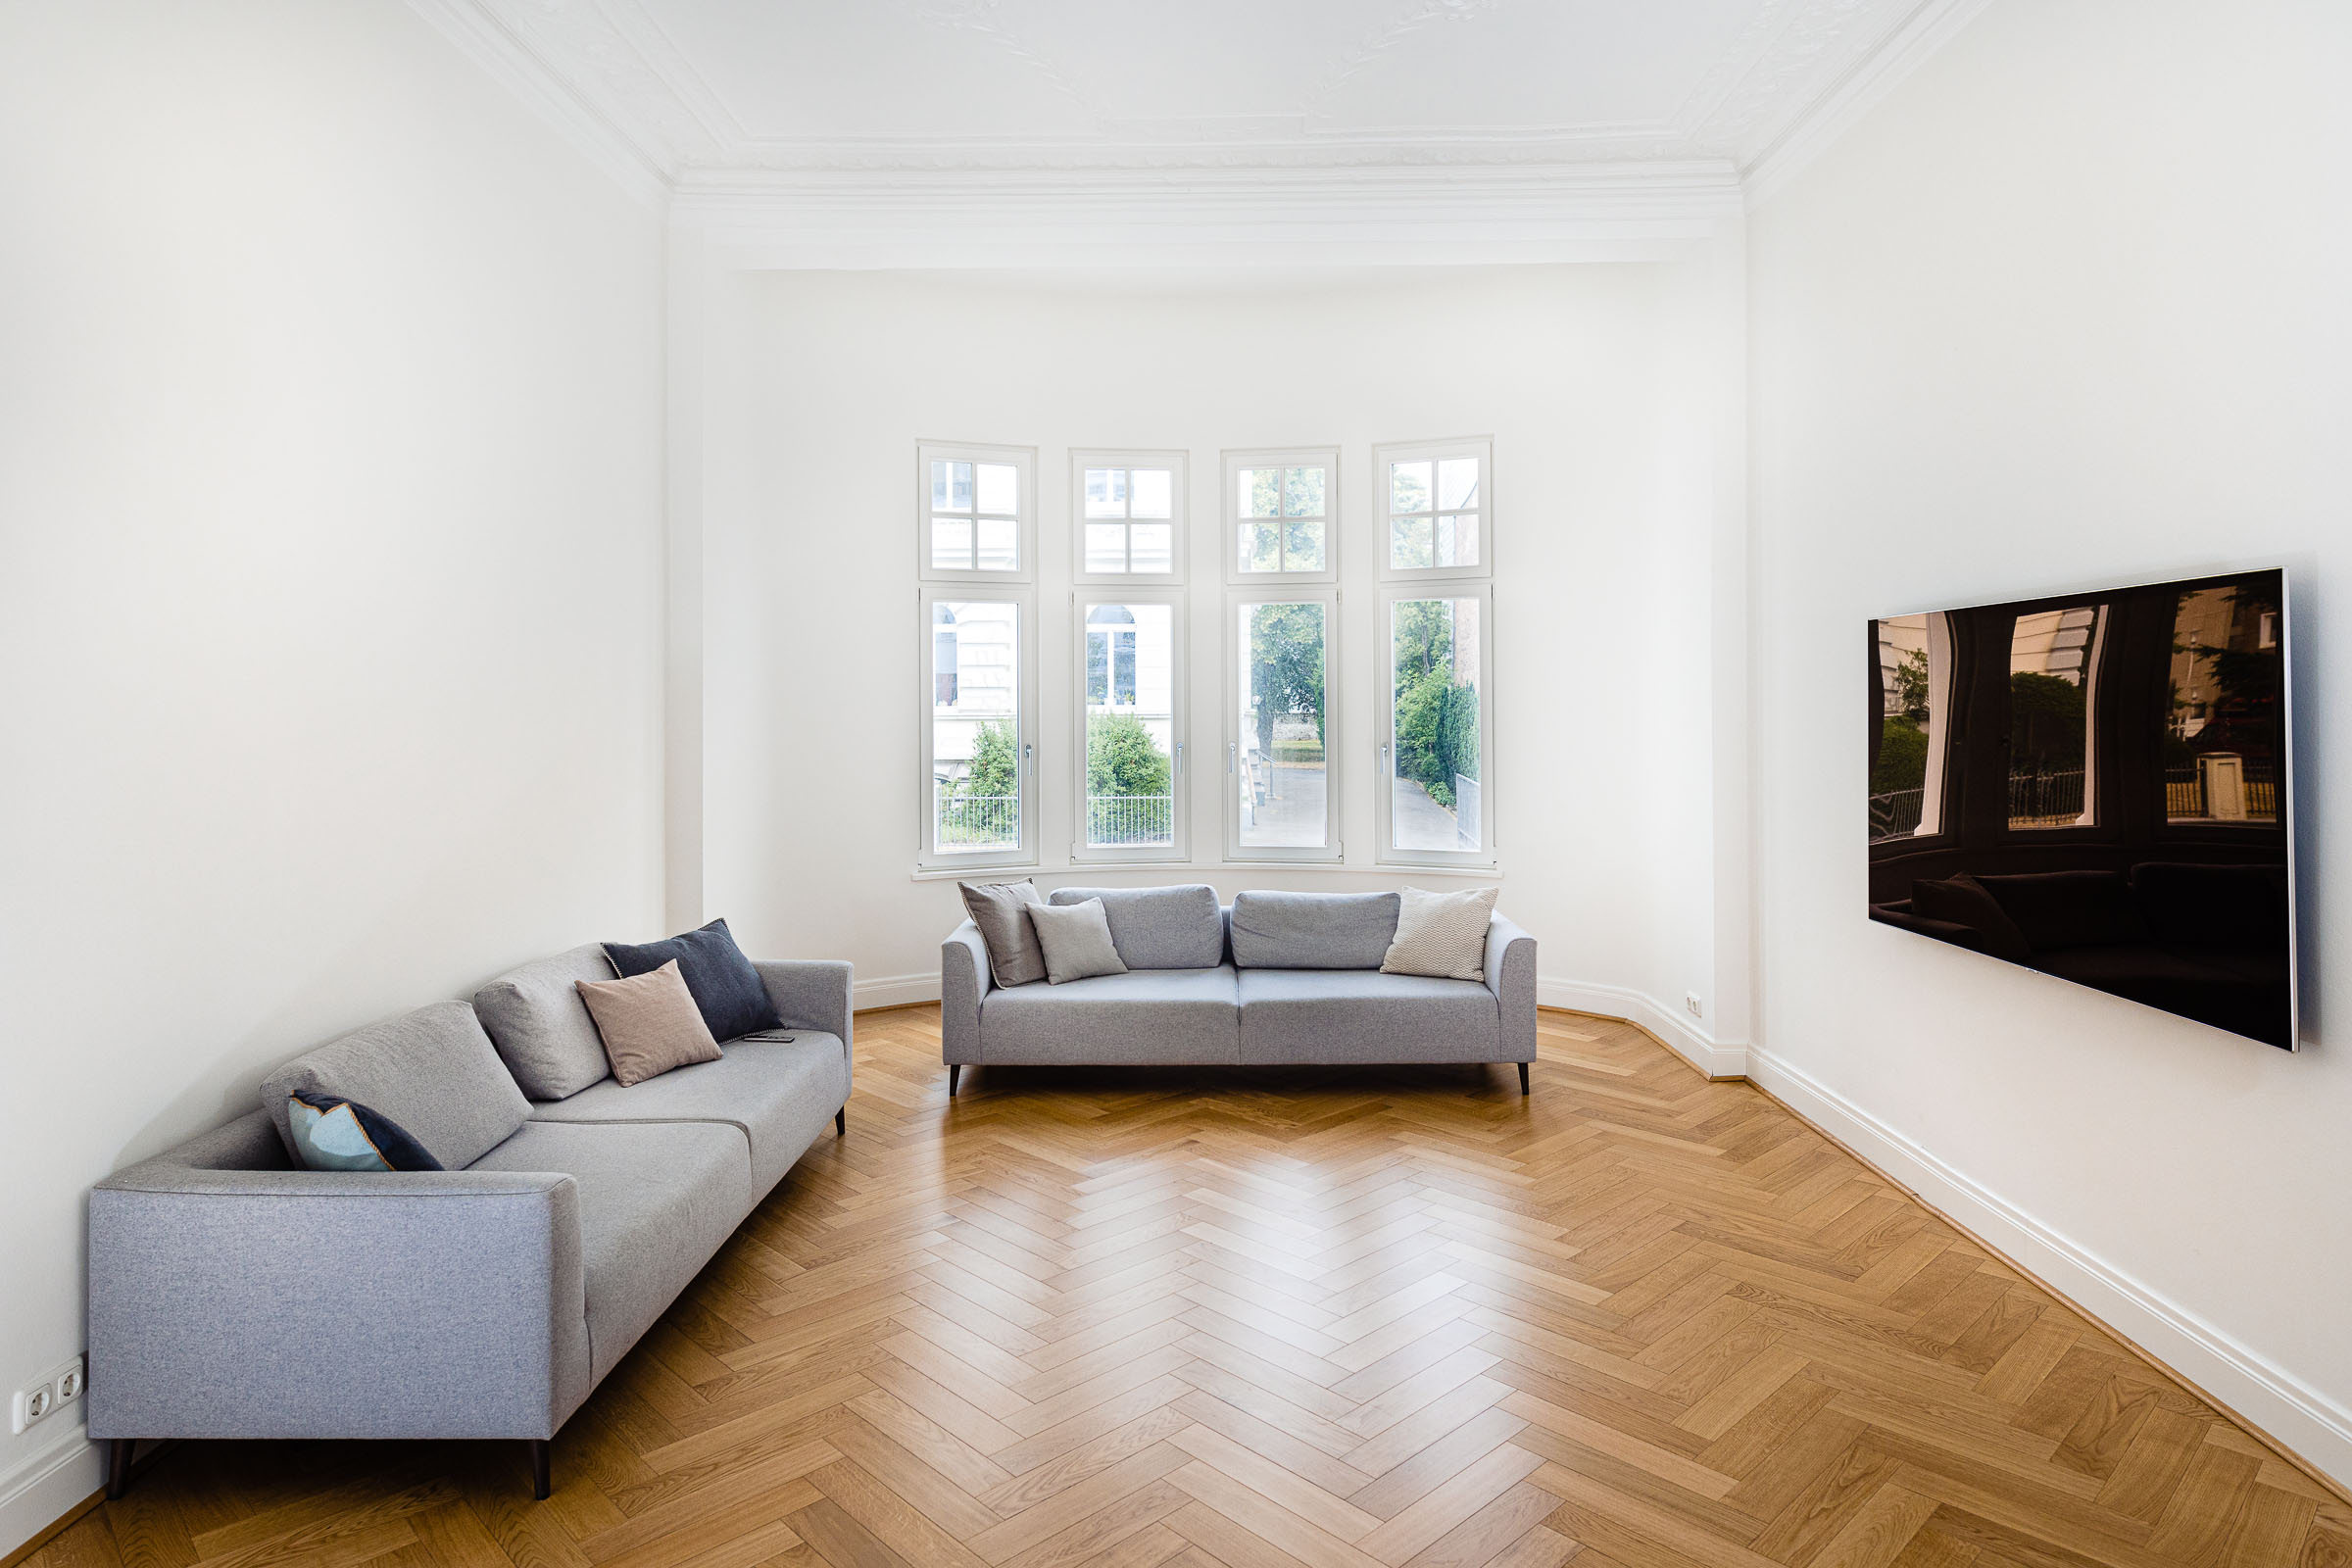 Das Wohnzimmer einer Luxusimmobilie mit braunem Parkettboden und lichtdurchfluteten Räumen.